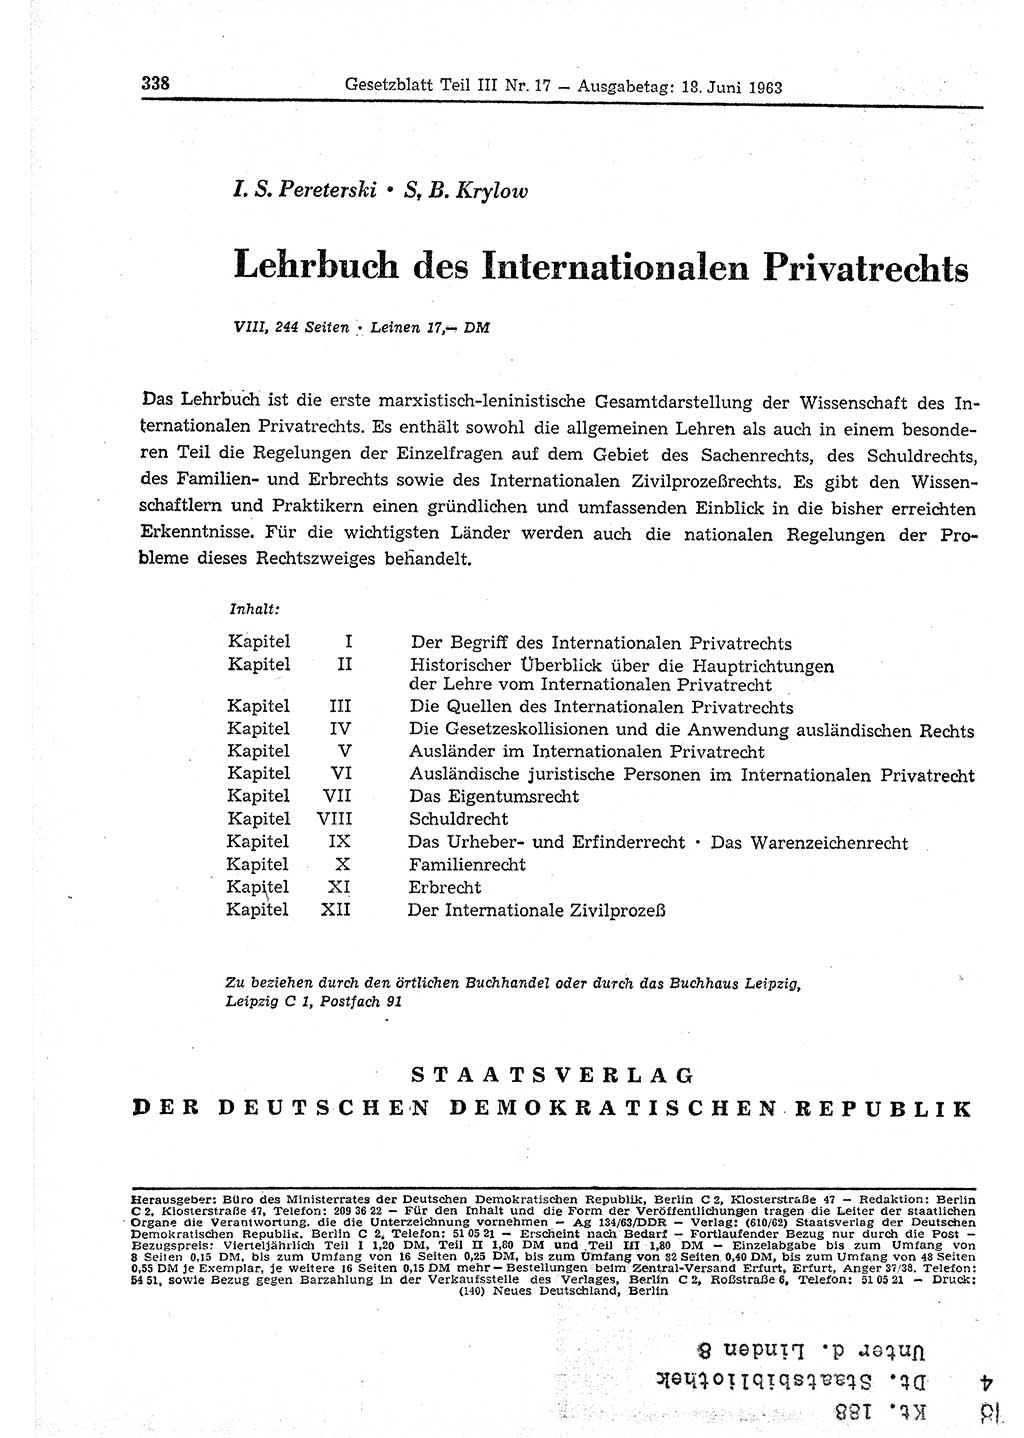 Gesetzblatt (GBl.) der Deutschen Demokratischen Republik (DDR) Teil ⅠⅠⅠ 1963, Seite 338 (GBl. DDR ⅠⅠⅠ 1963, S. 338)